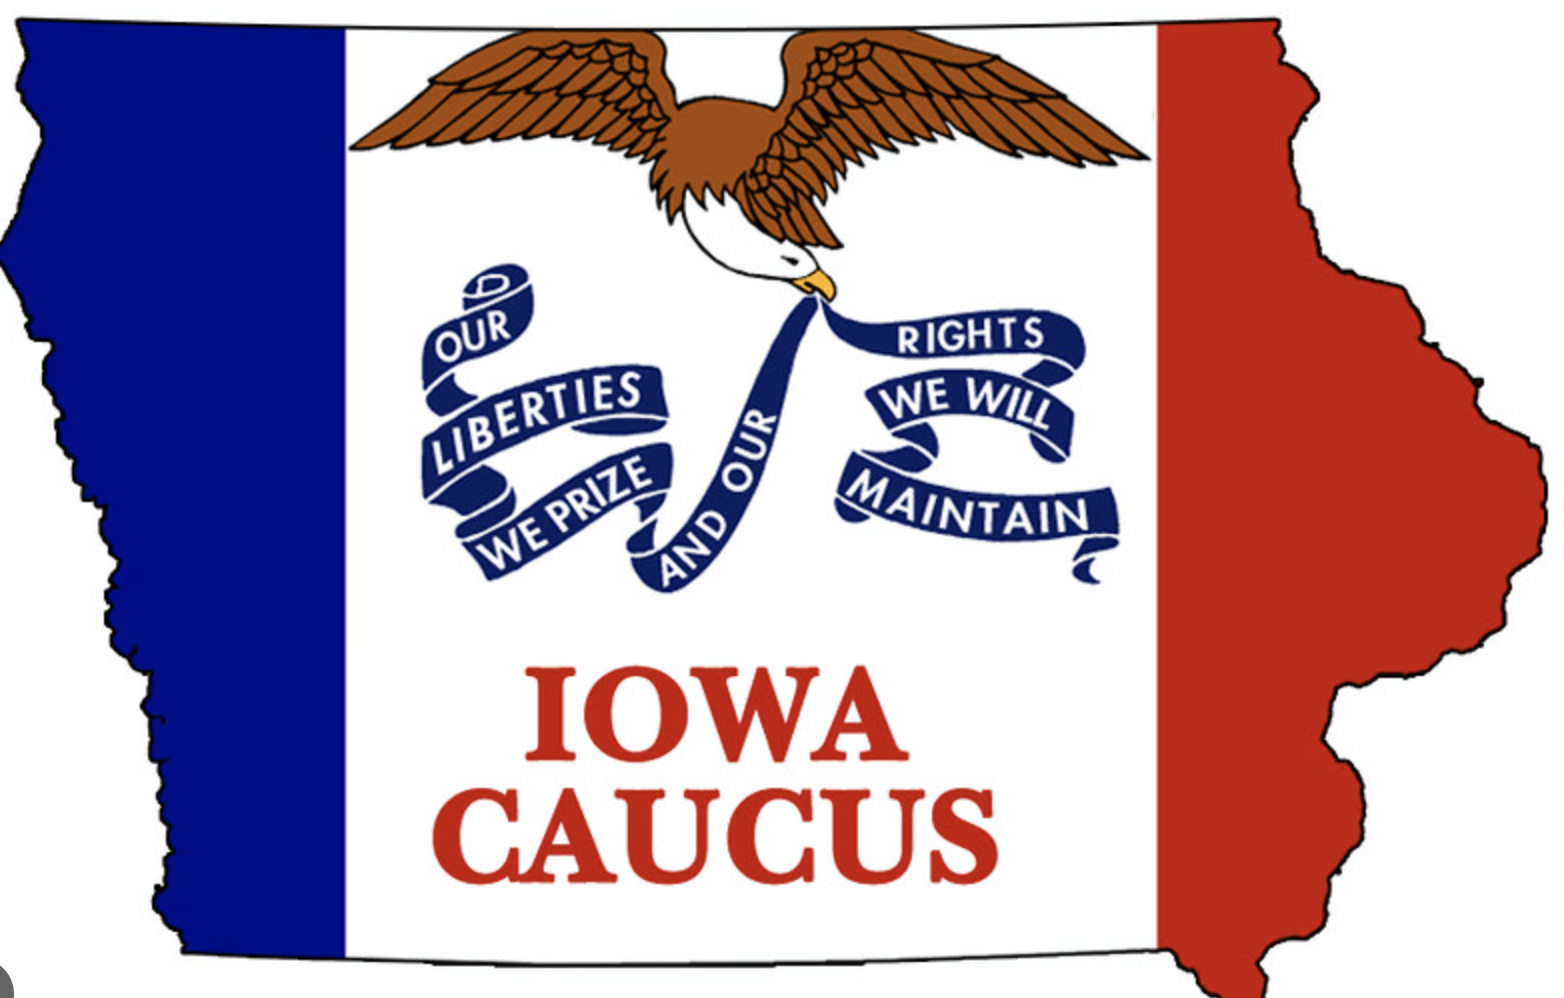 Iowa Caucus illustration